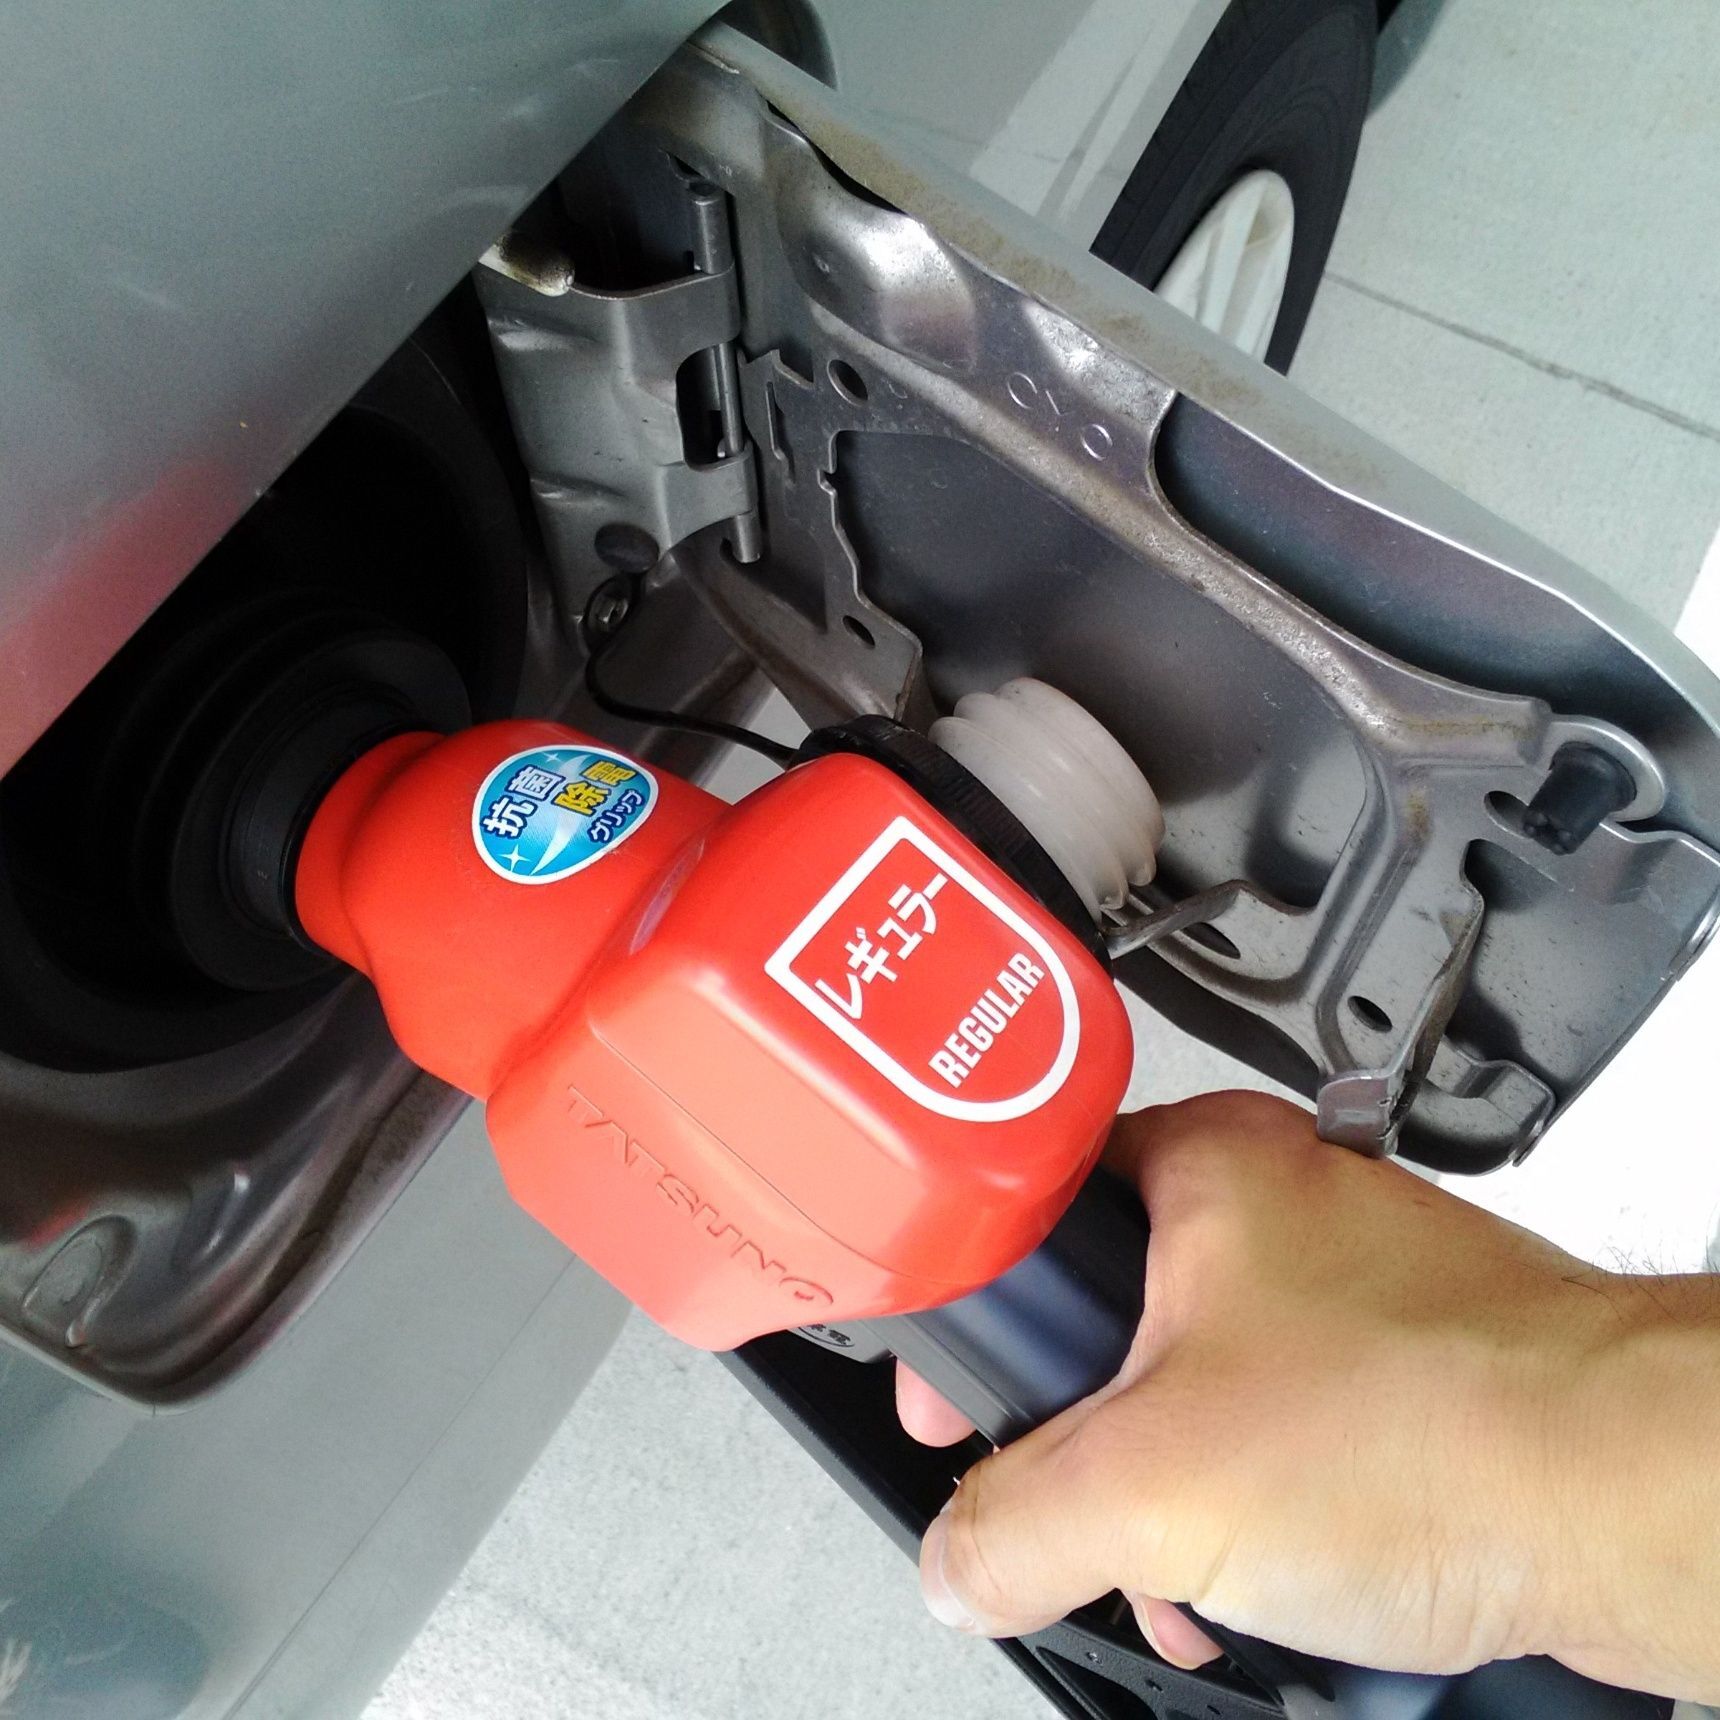 コストコのガソリンスタンドの利用方法と注意点について